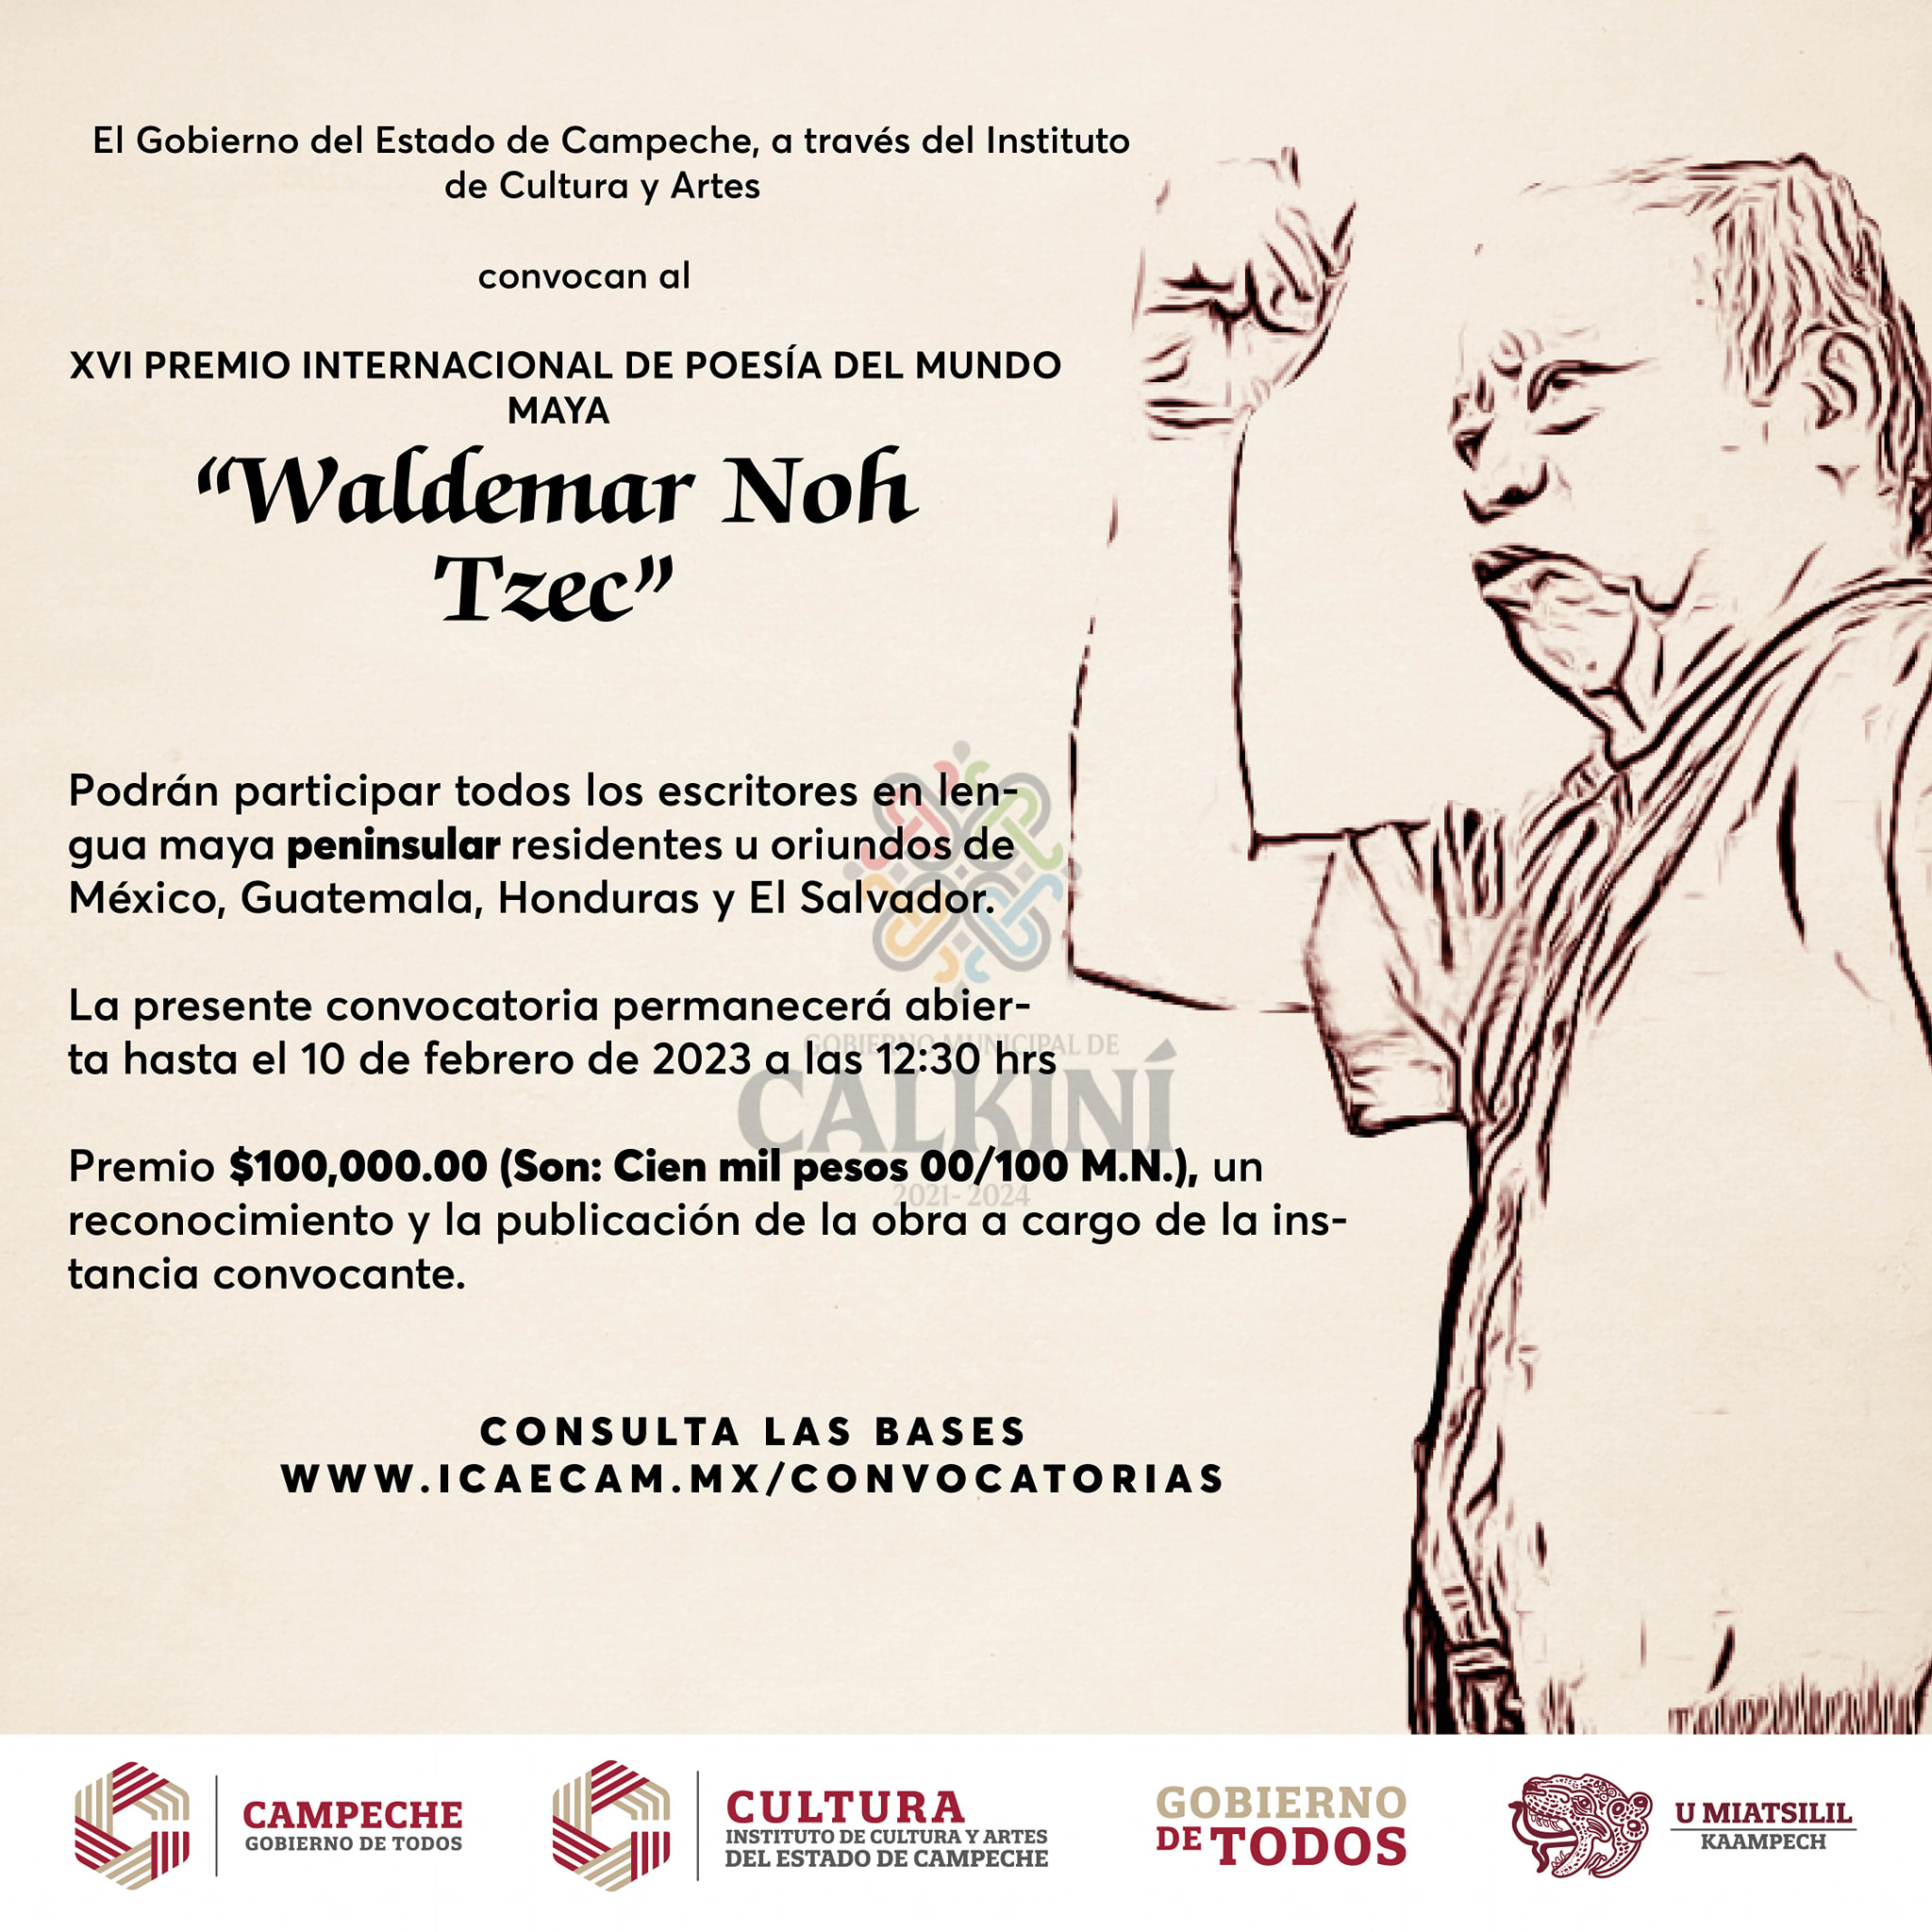 Campeche invita a participar en el XVI Premio Internacional de Poesía del Mundo Maya “Waldemar Noh Tzec”